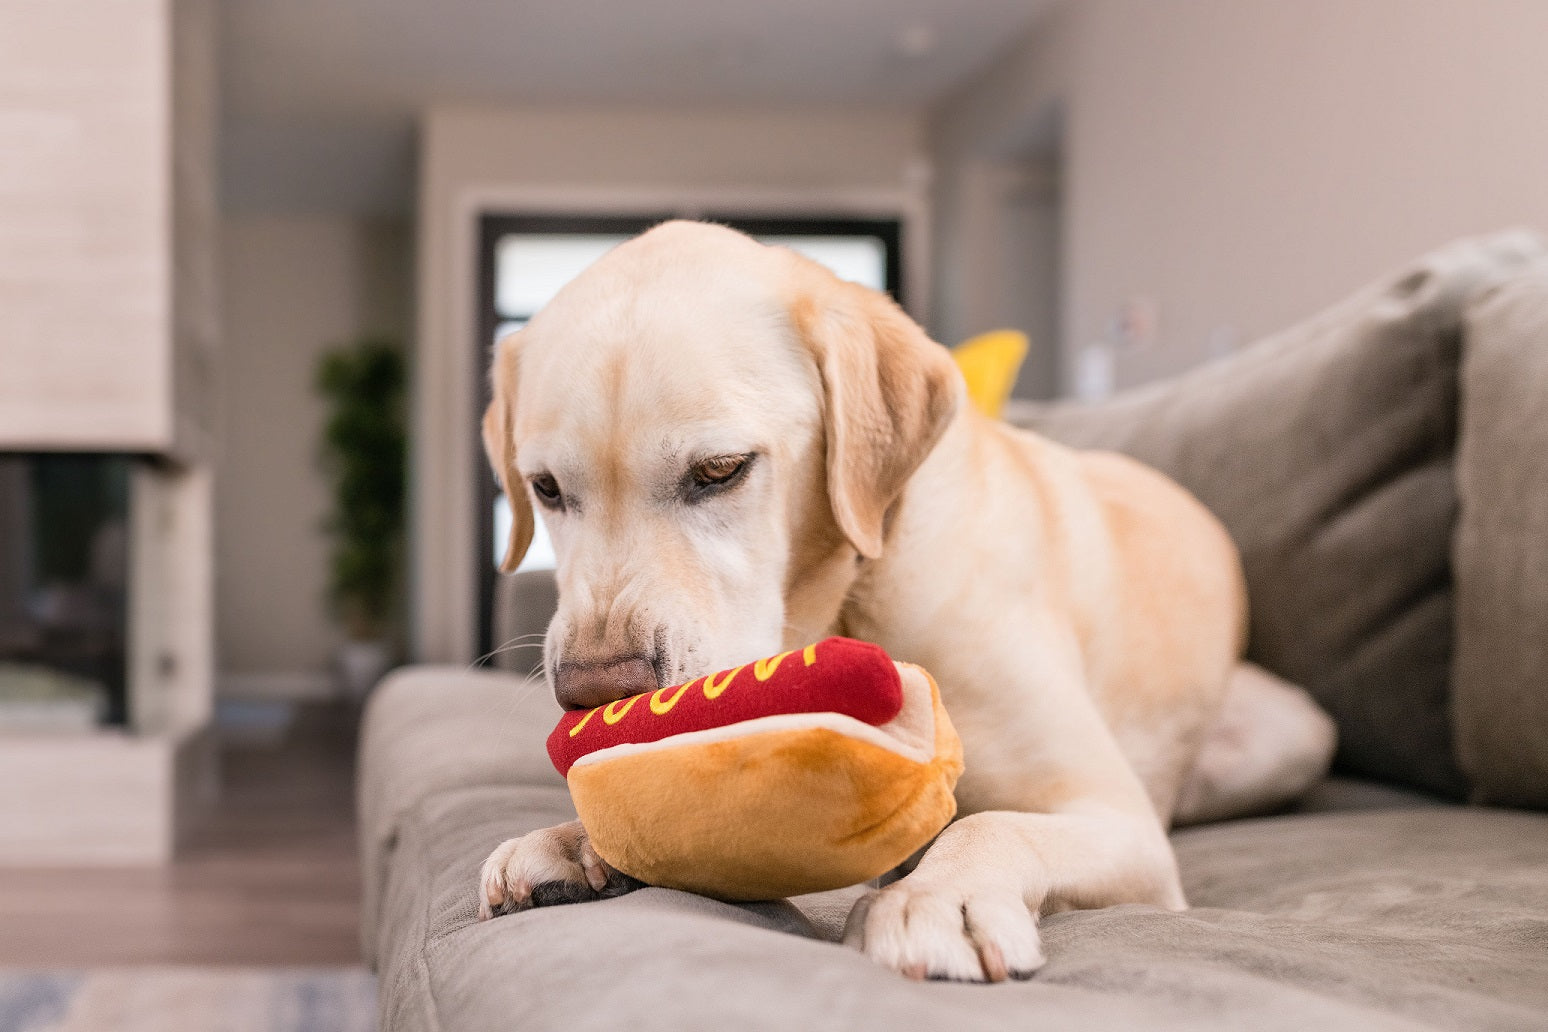 Kategorie "P.L.A.Y. Hundespielzeug" im AMMI for Dogs Onlineshop. Bildbeschreibung: Ein glücklicher Hund kaut auf einem Hotdog-Spielzeug herum und hat sichtlich Spaß dabei.